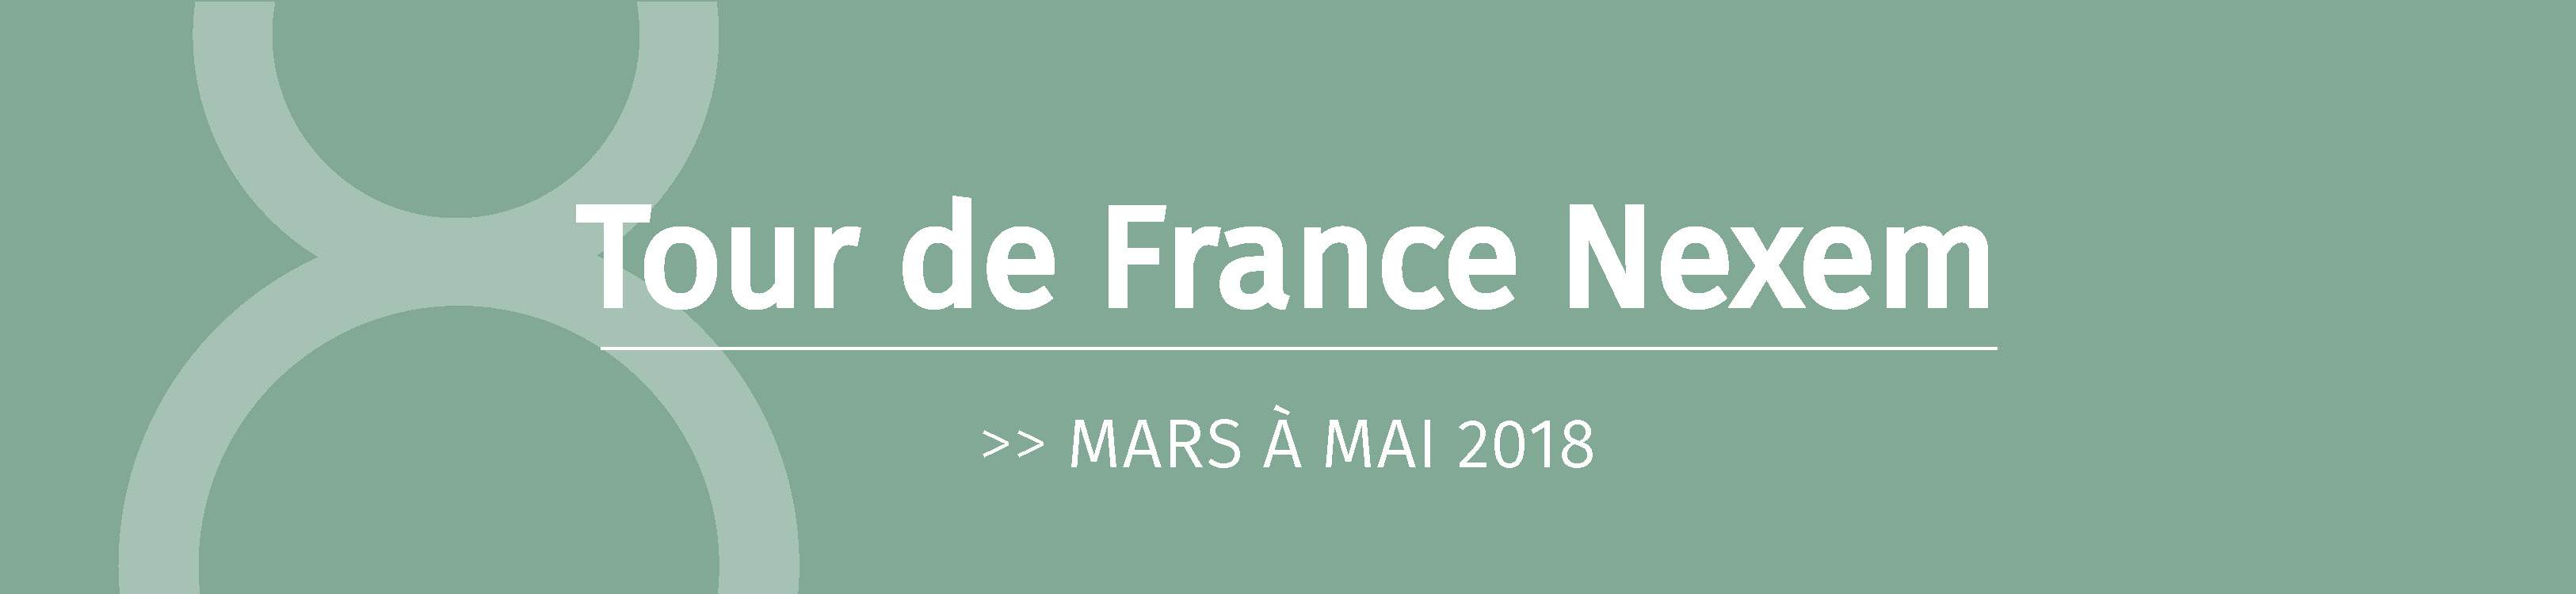 Tour de France de mars à mai 2018